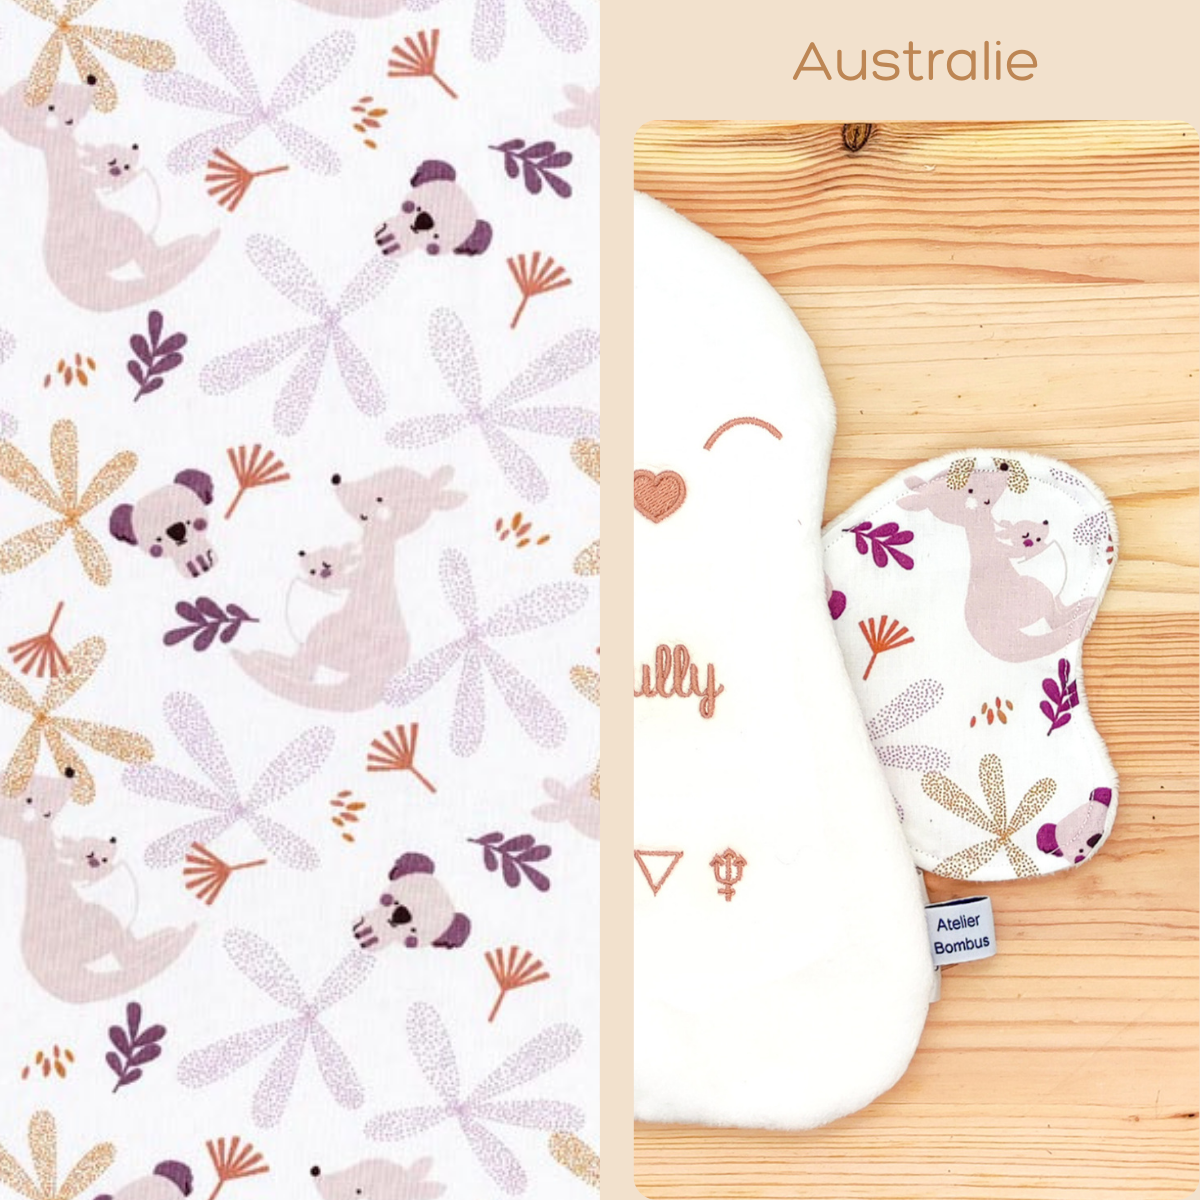 Offrez à votre enfant un voyage en Australie avec les ailes Bee Boo aux motifs de kangourous, koalas et feuilles automnales aux couleurs vives.